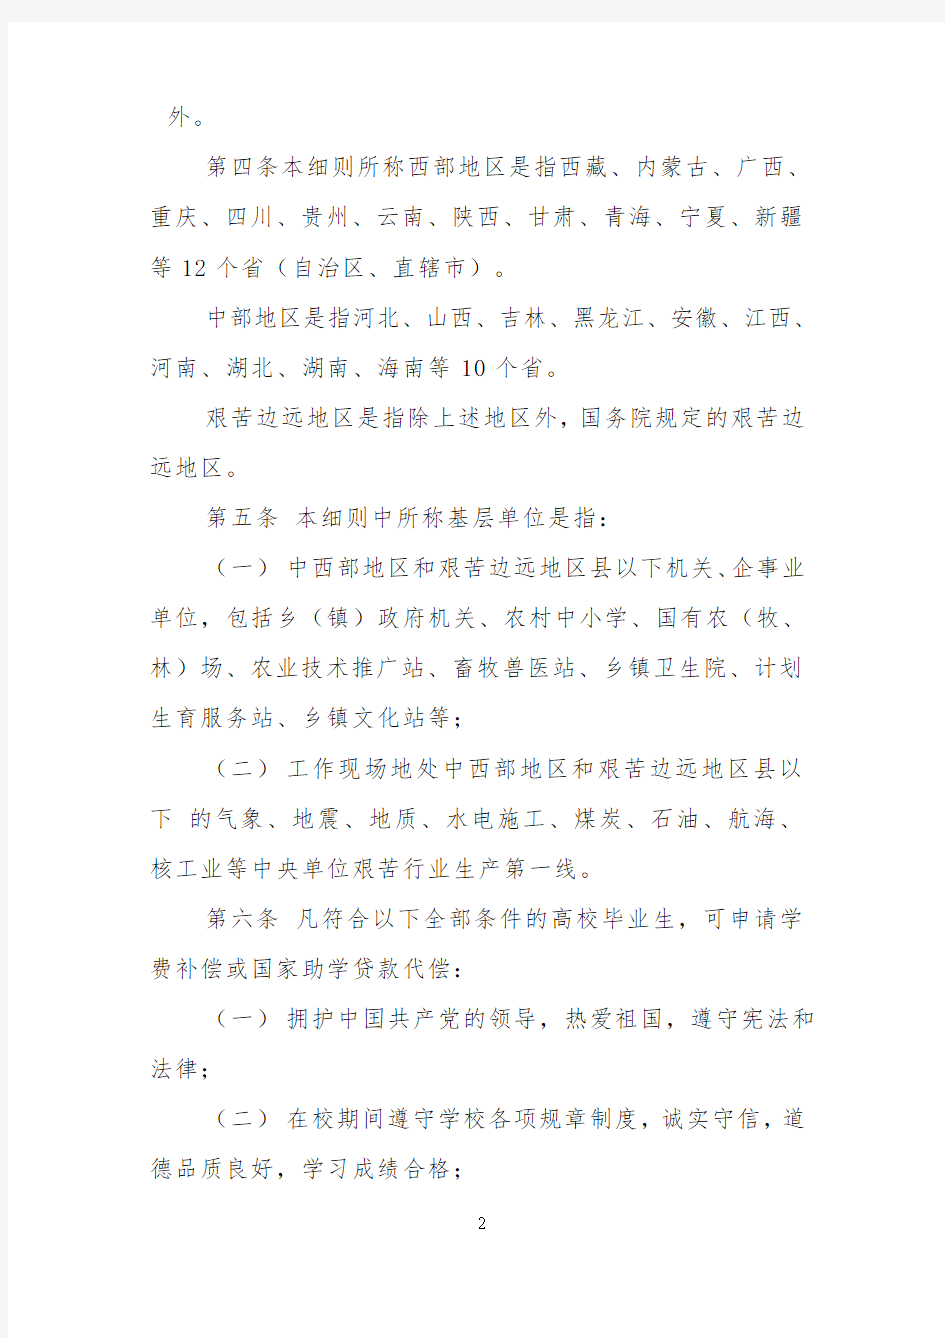 基层就业学费补偿国家助学贷款代偿实施细则-Lanzhou